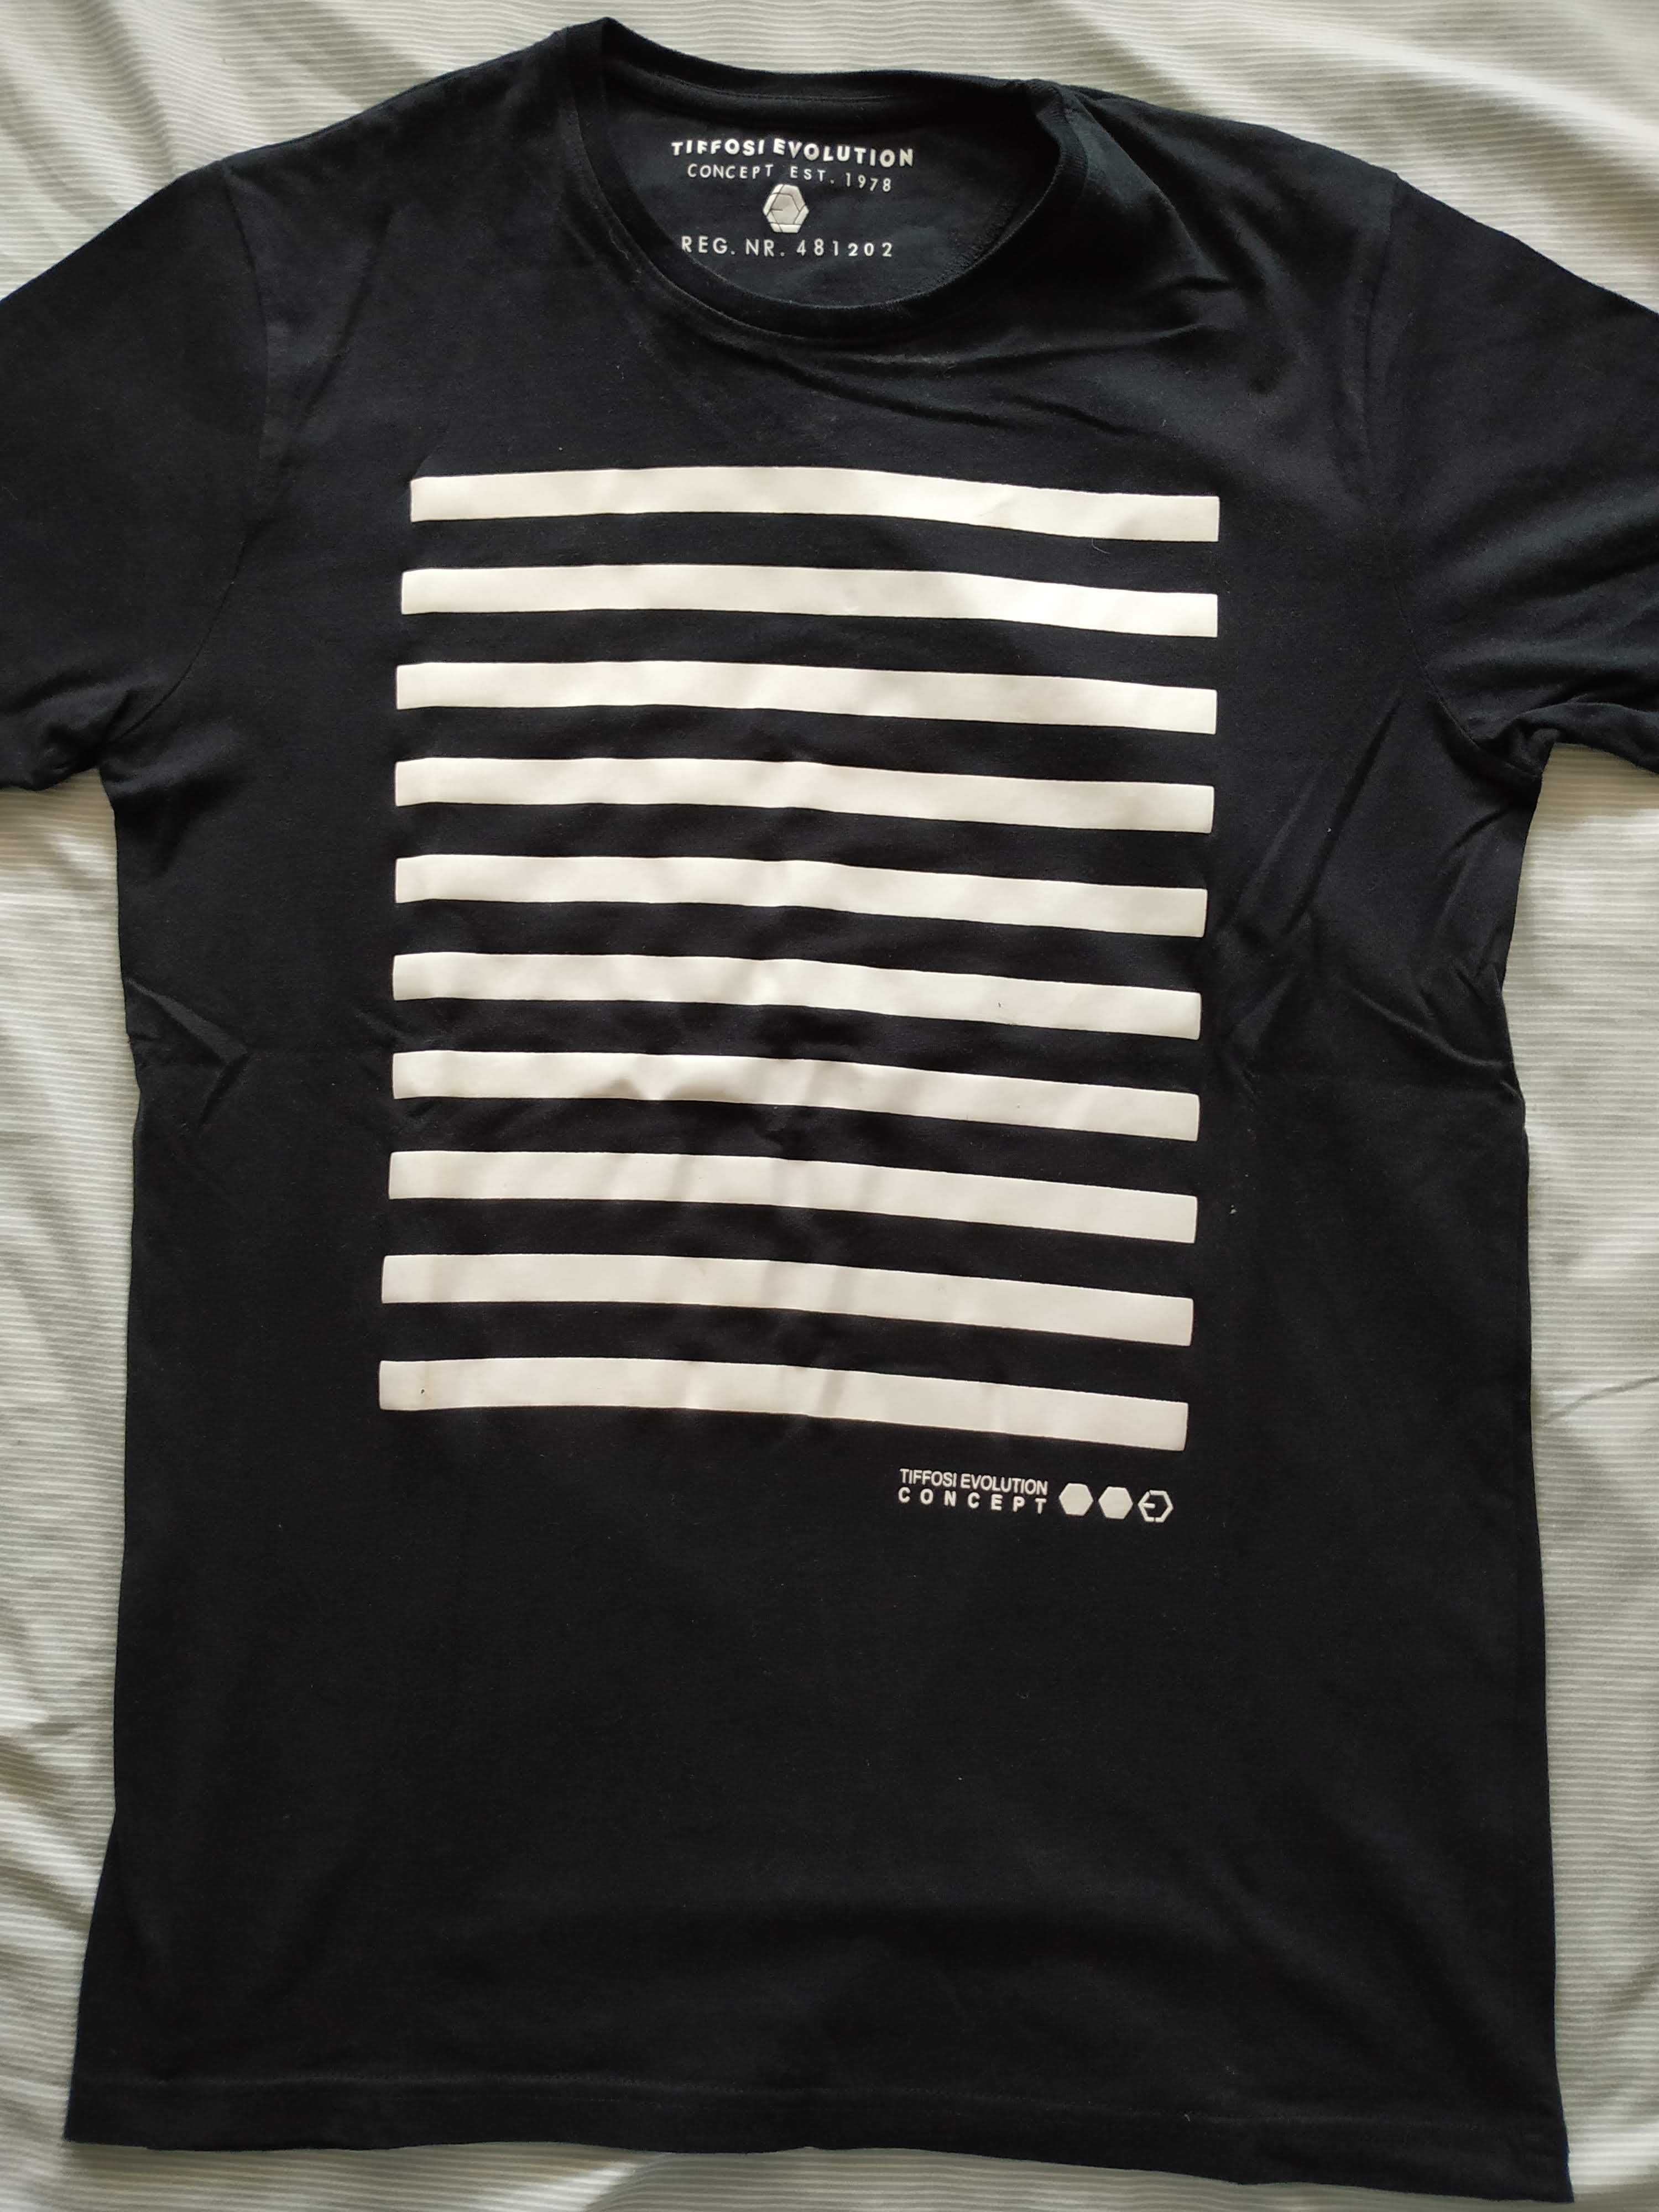 T-shirt Tiffosi (como nova)